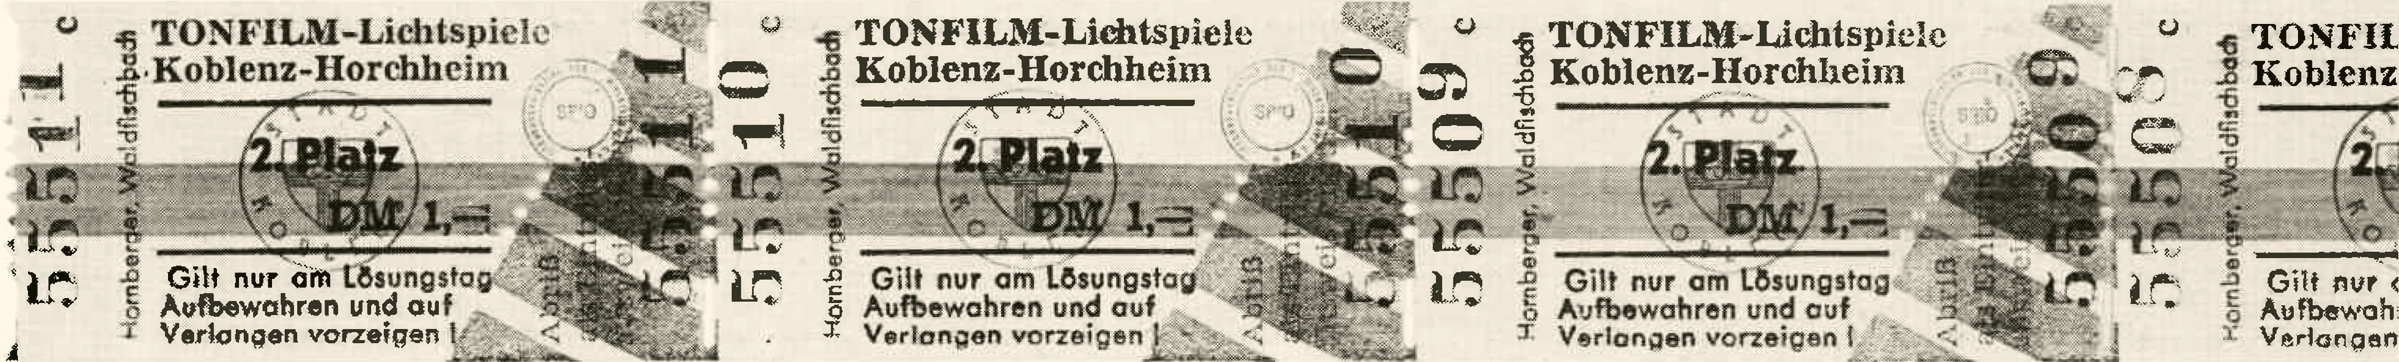 Kinokarten Tonfilm-Lichtspiele Koblenz-Horchheim